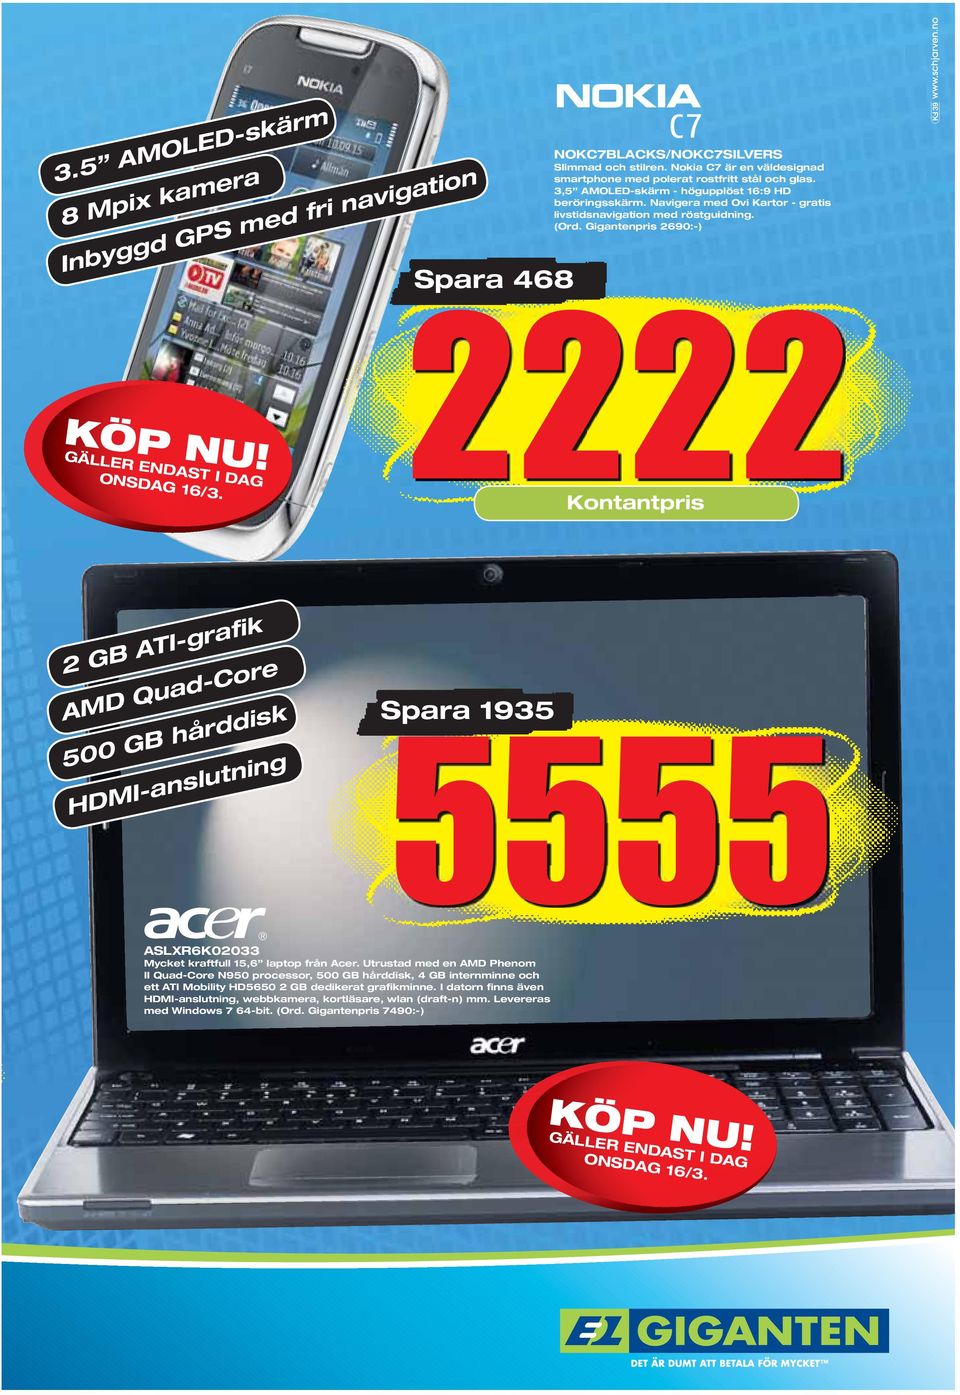 Spara 468 2222 Kontantpris 2 GB ATI-grafik AMD Quad-Core 500 GB hårddisk HDMI-anslutning ASLXR6K02033 Mycket kraftfull 15,6 laptop från Acer.